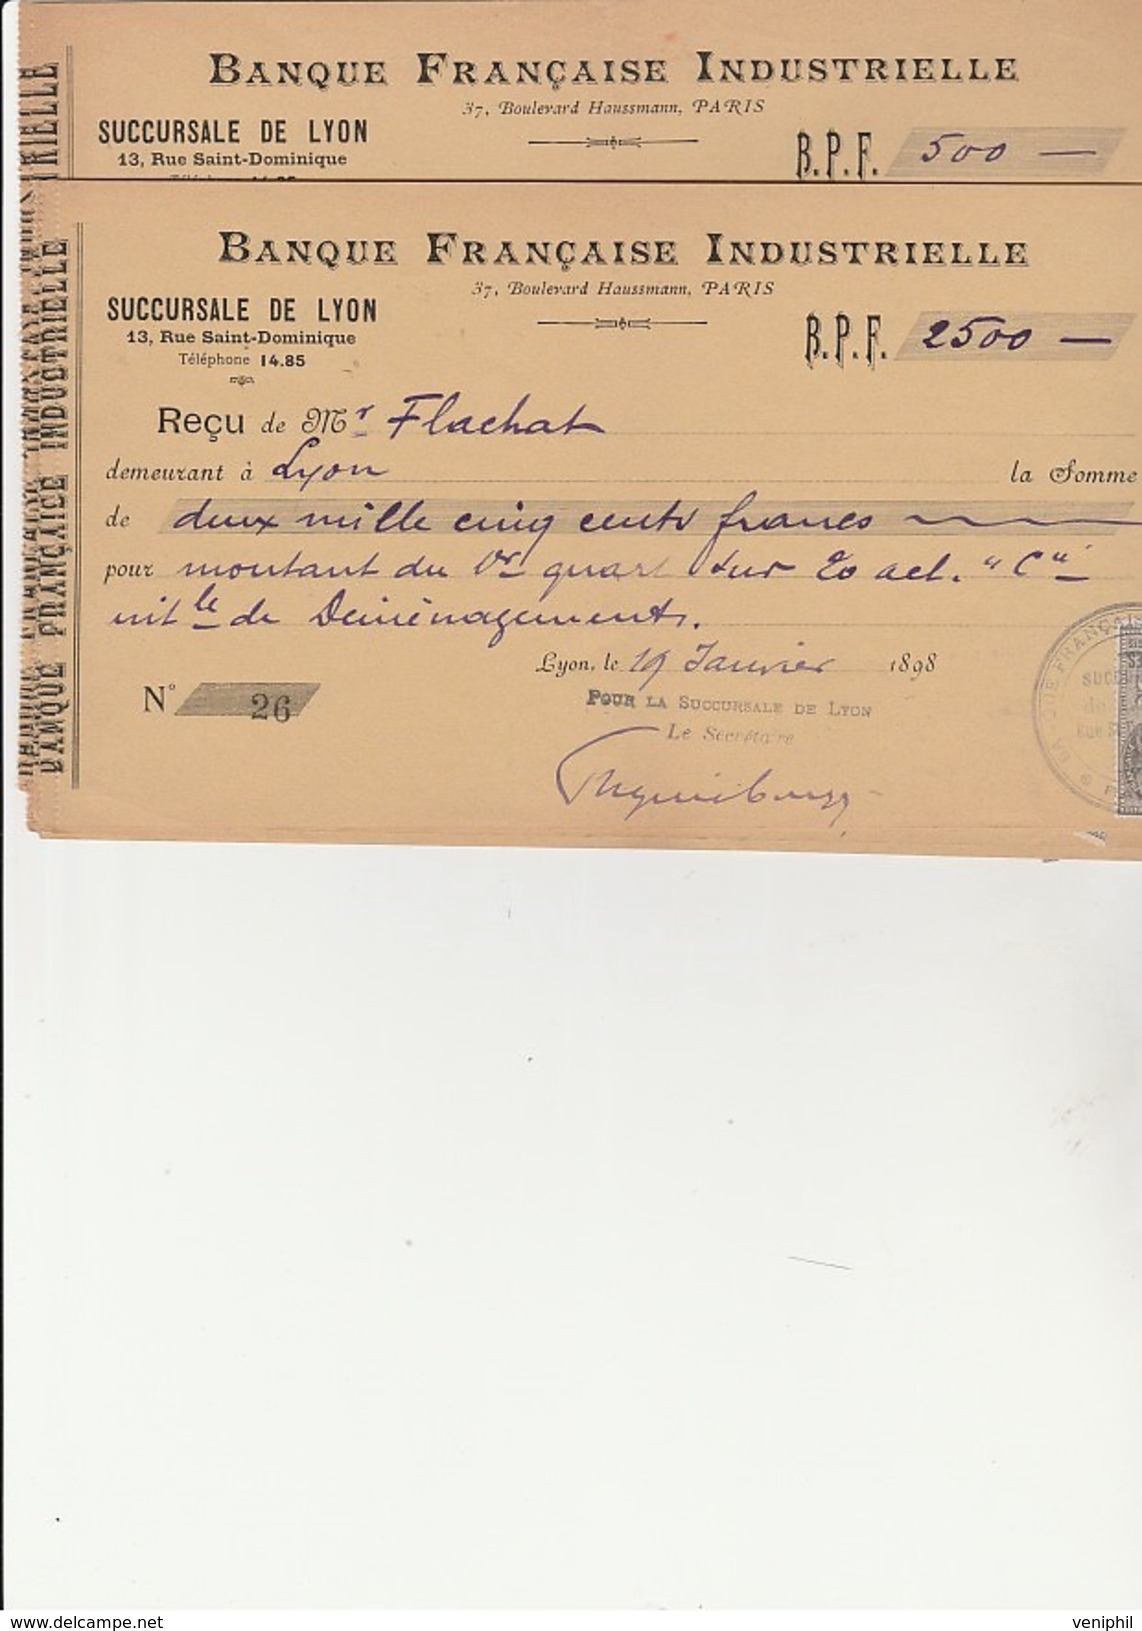 10 RECU TIMBRES  BANQUE FRANCAISE INDUSTRIELLE - SUCCURSALE DE LYON  - ANNEE 1898 - Lettres De Change